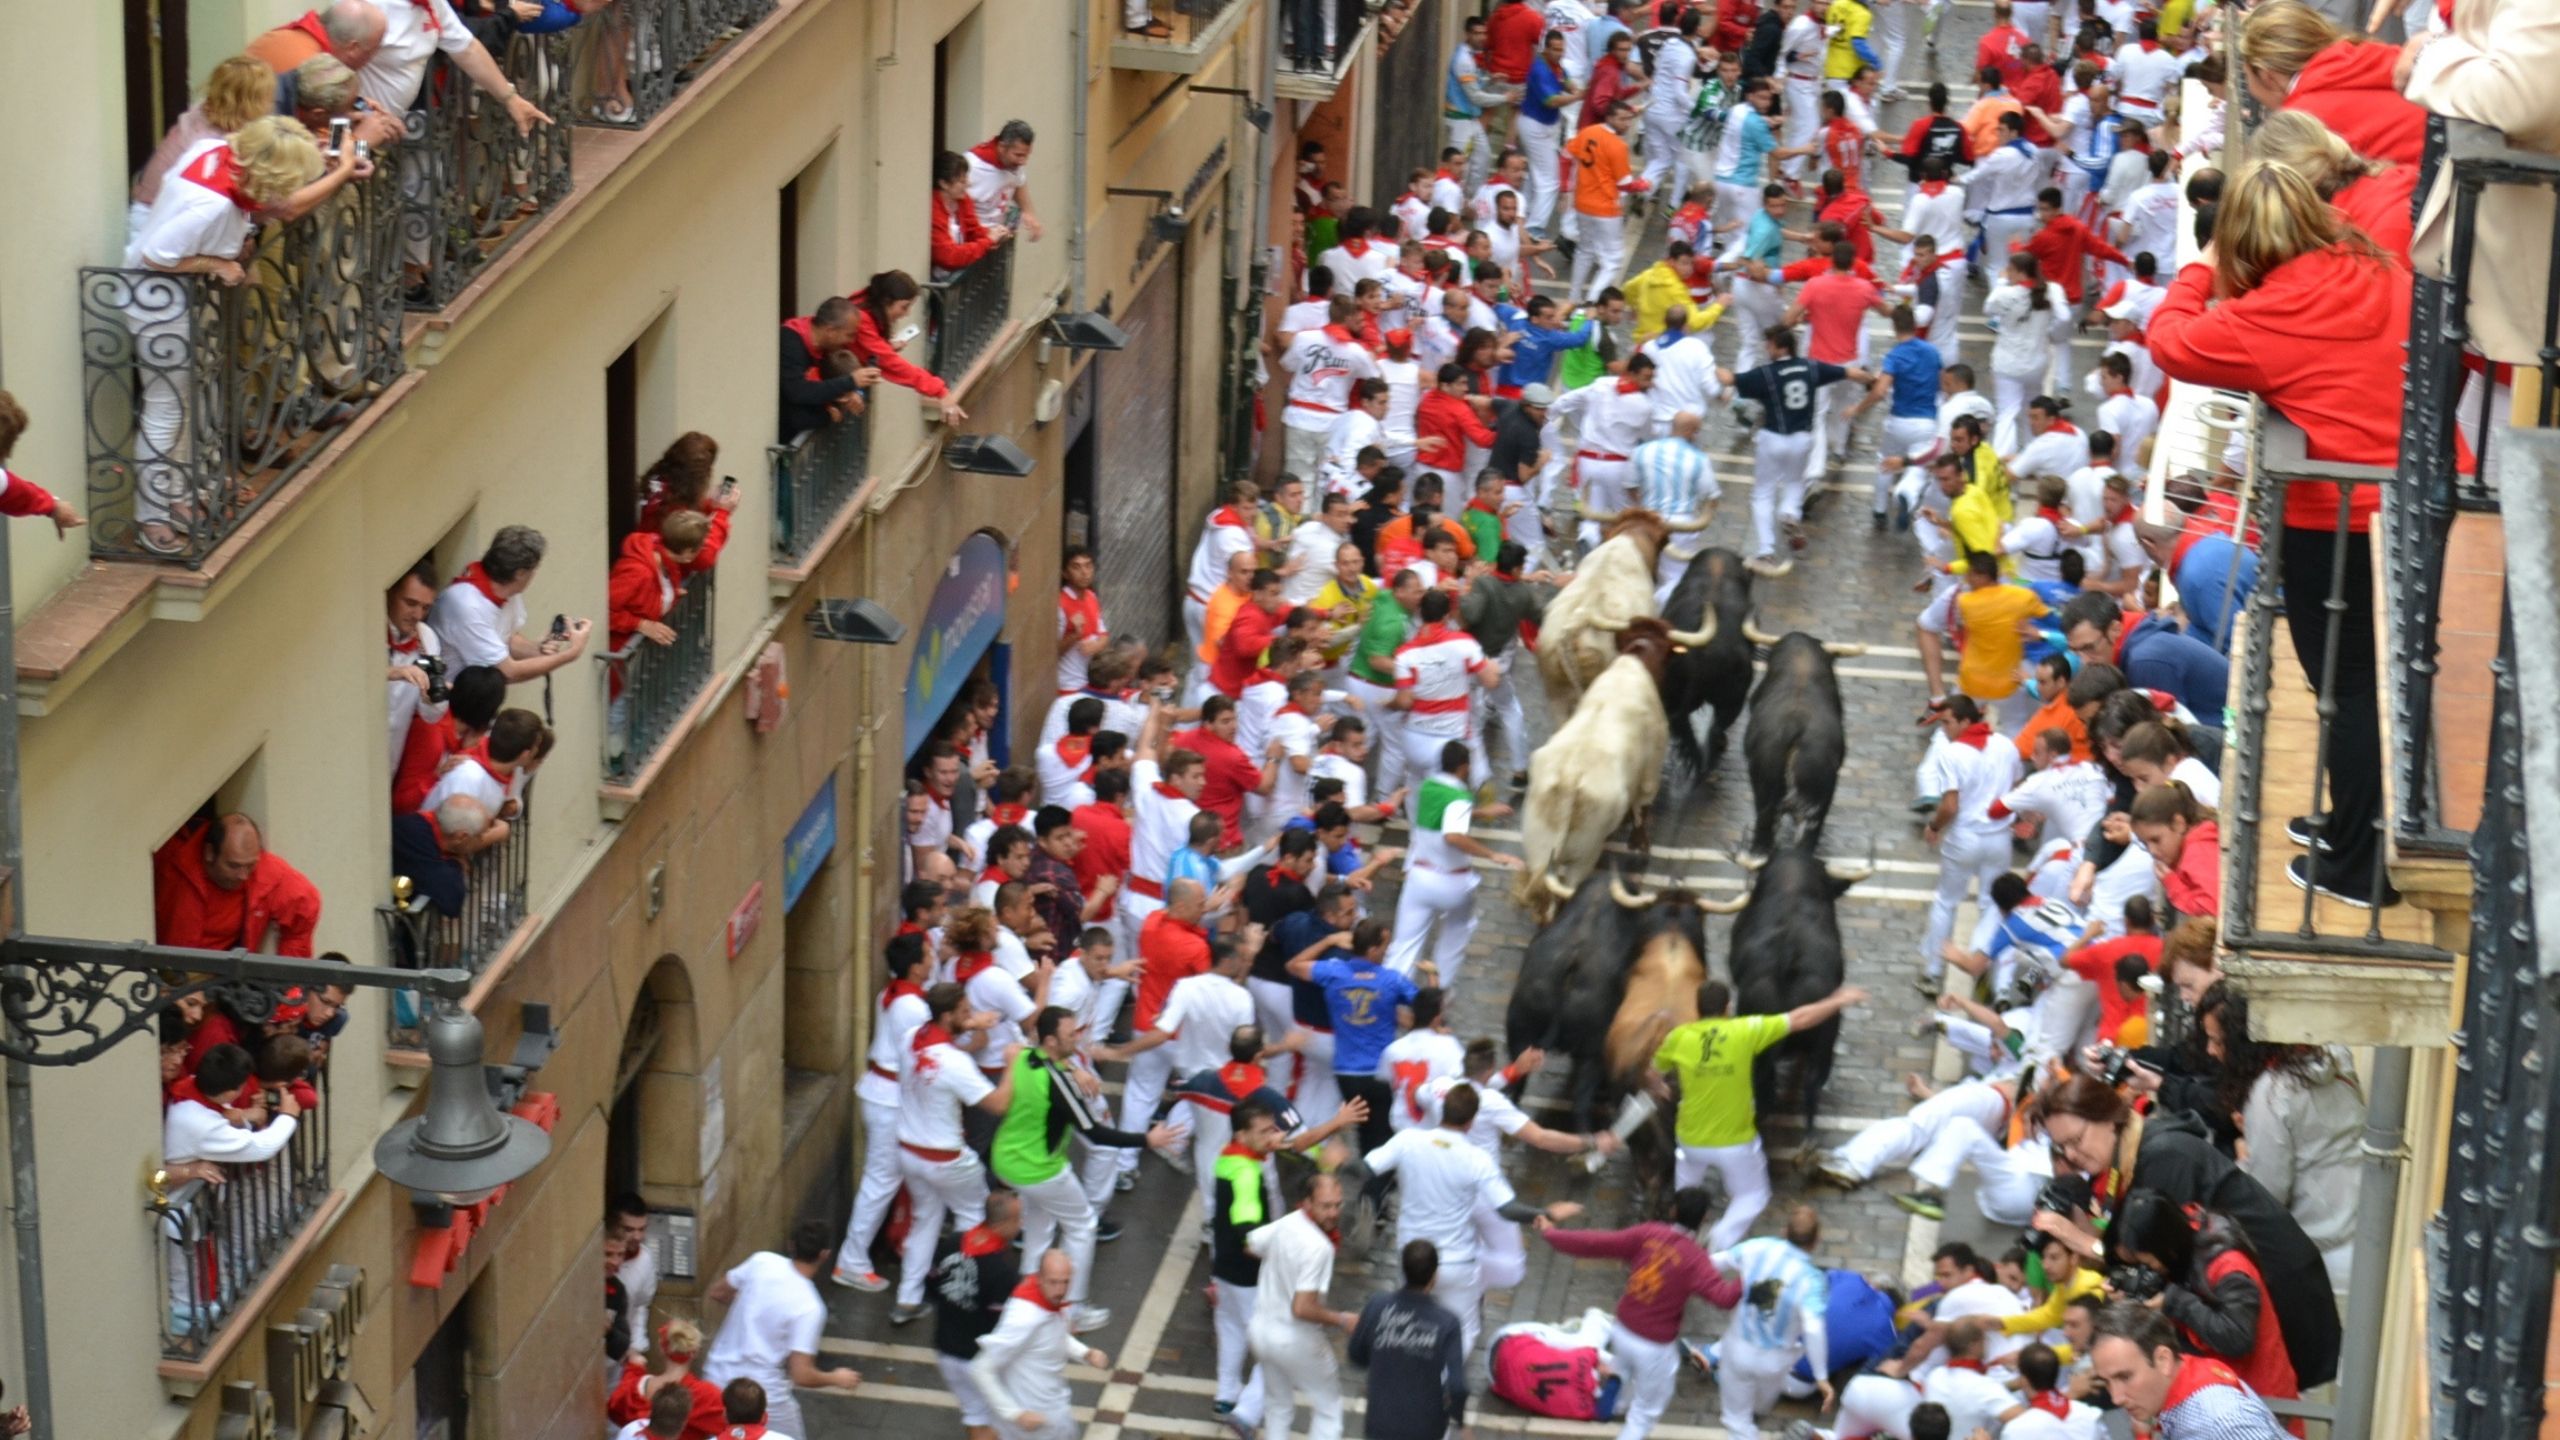 Experience the San Fermín bull running from a balcony